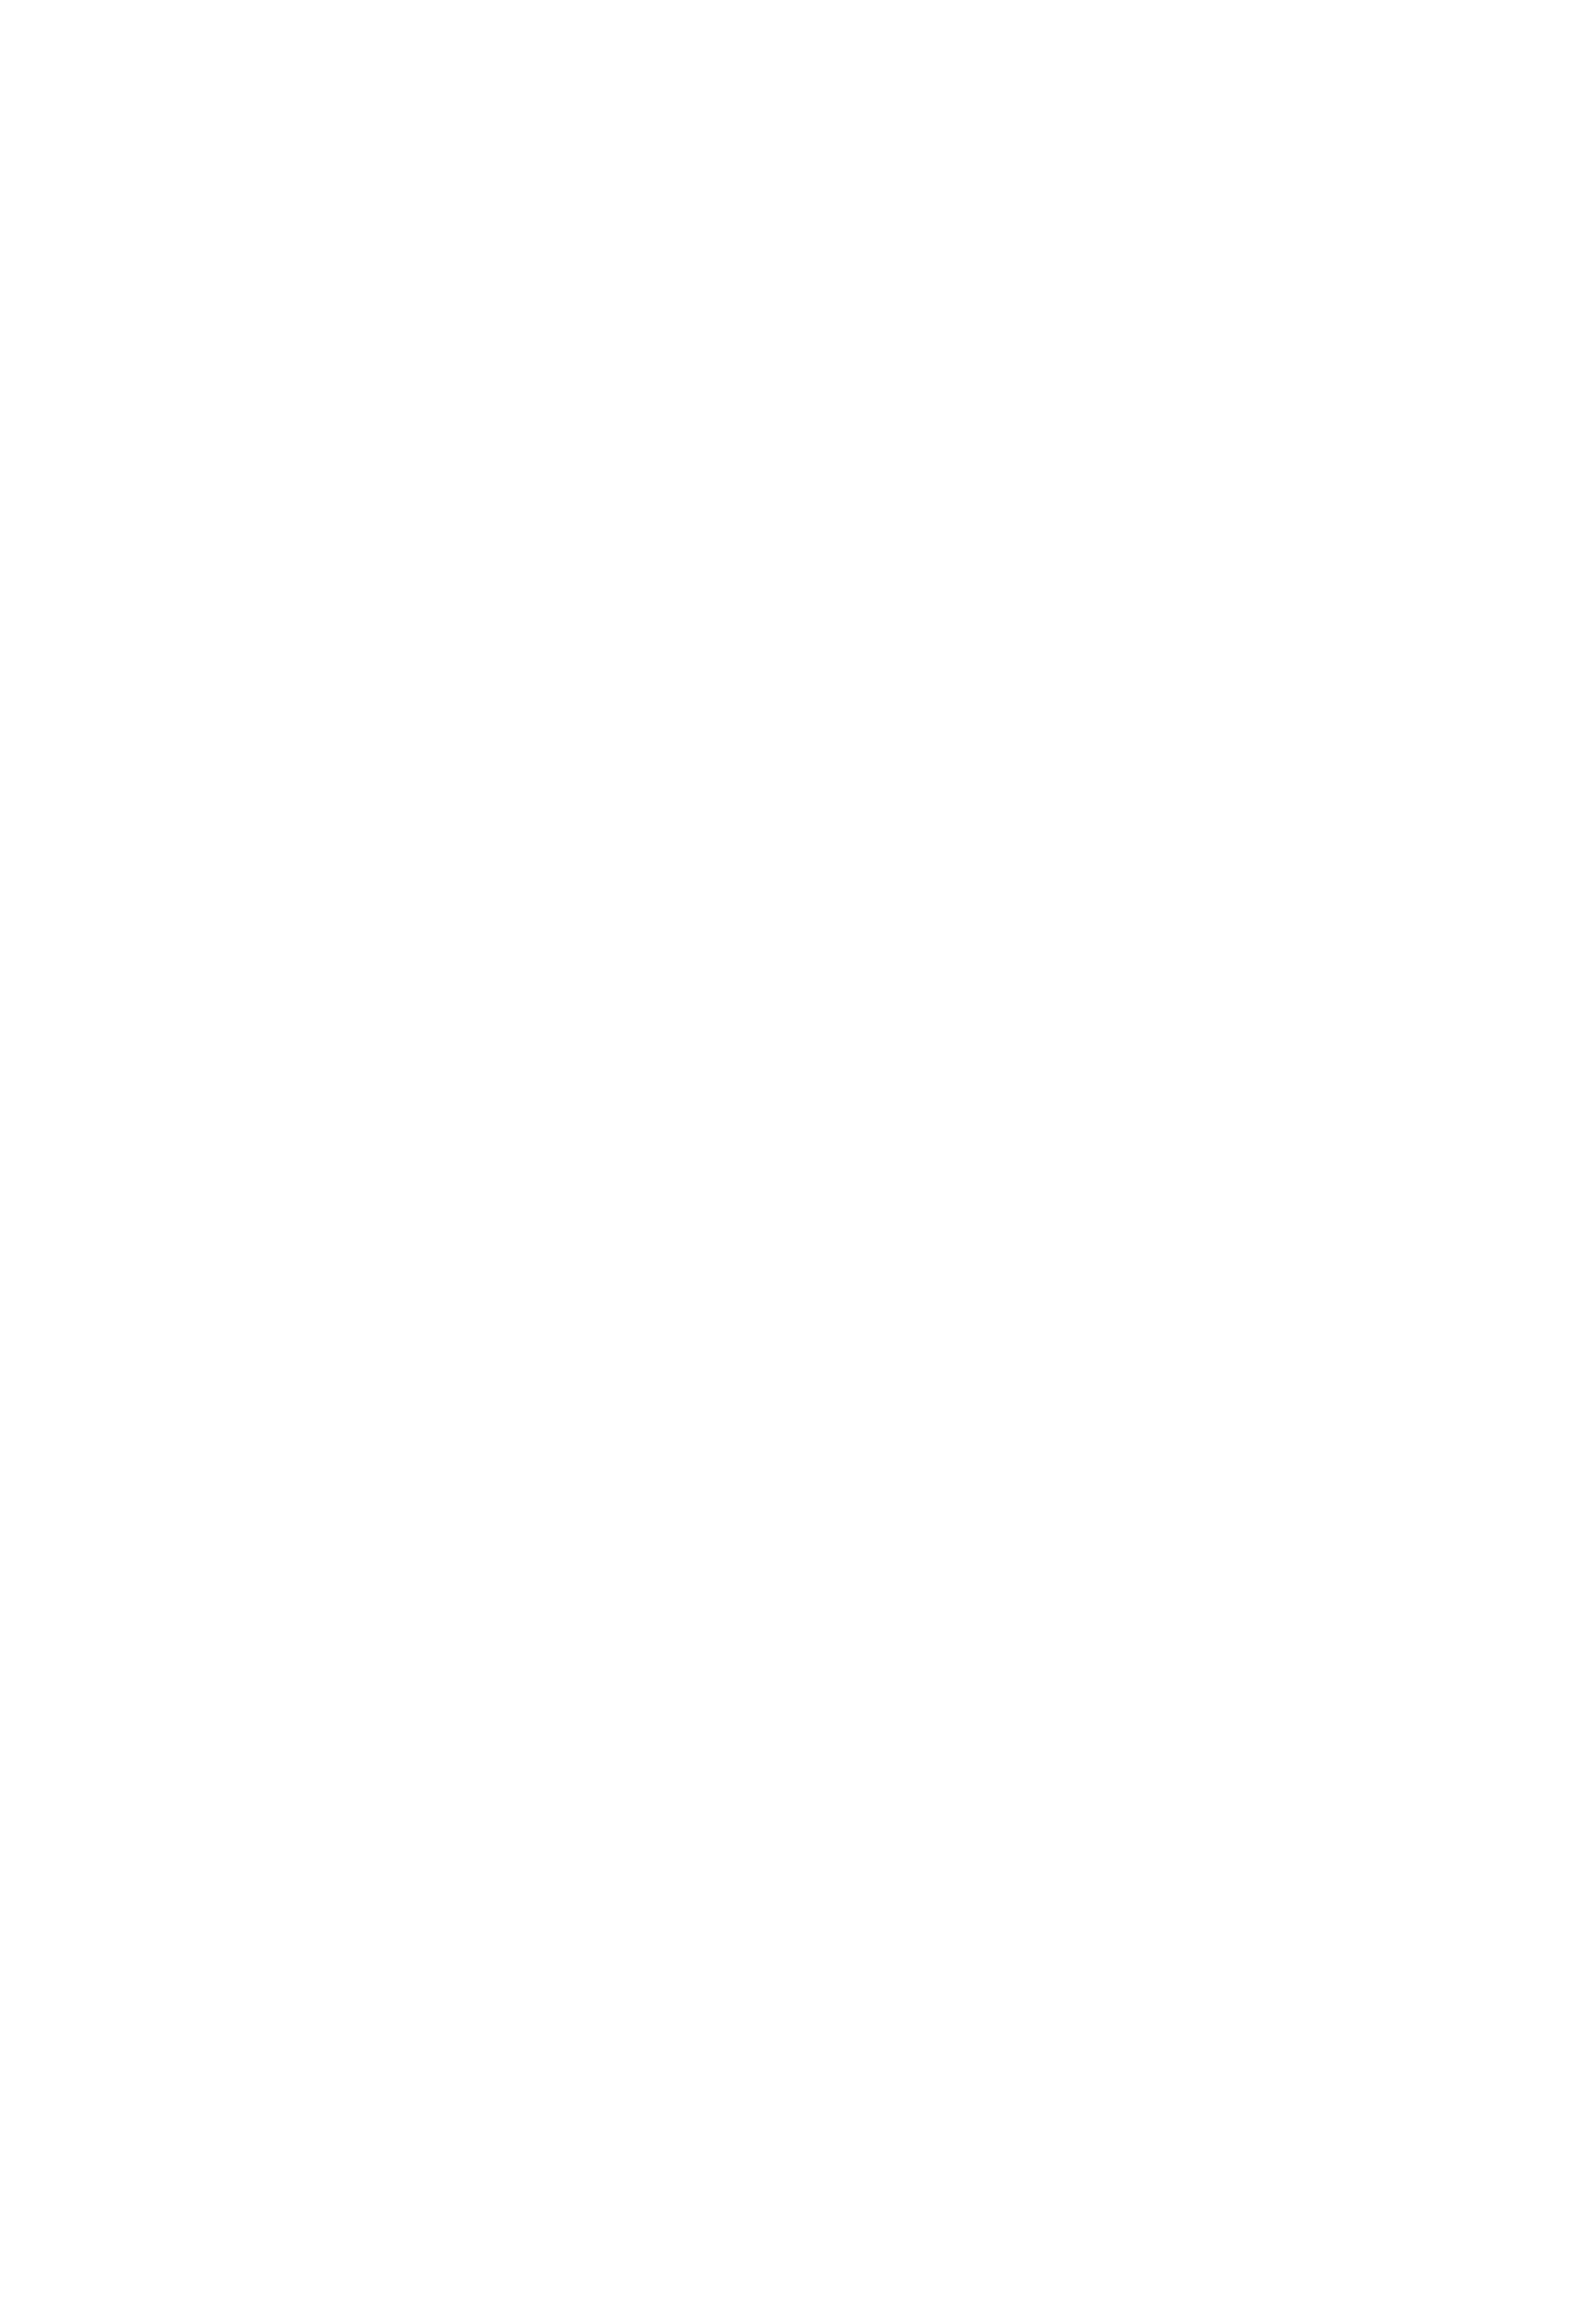 Daisy Mae&#39;s Steakhouse